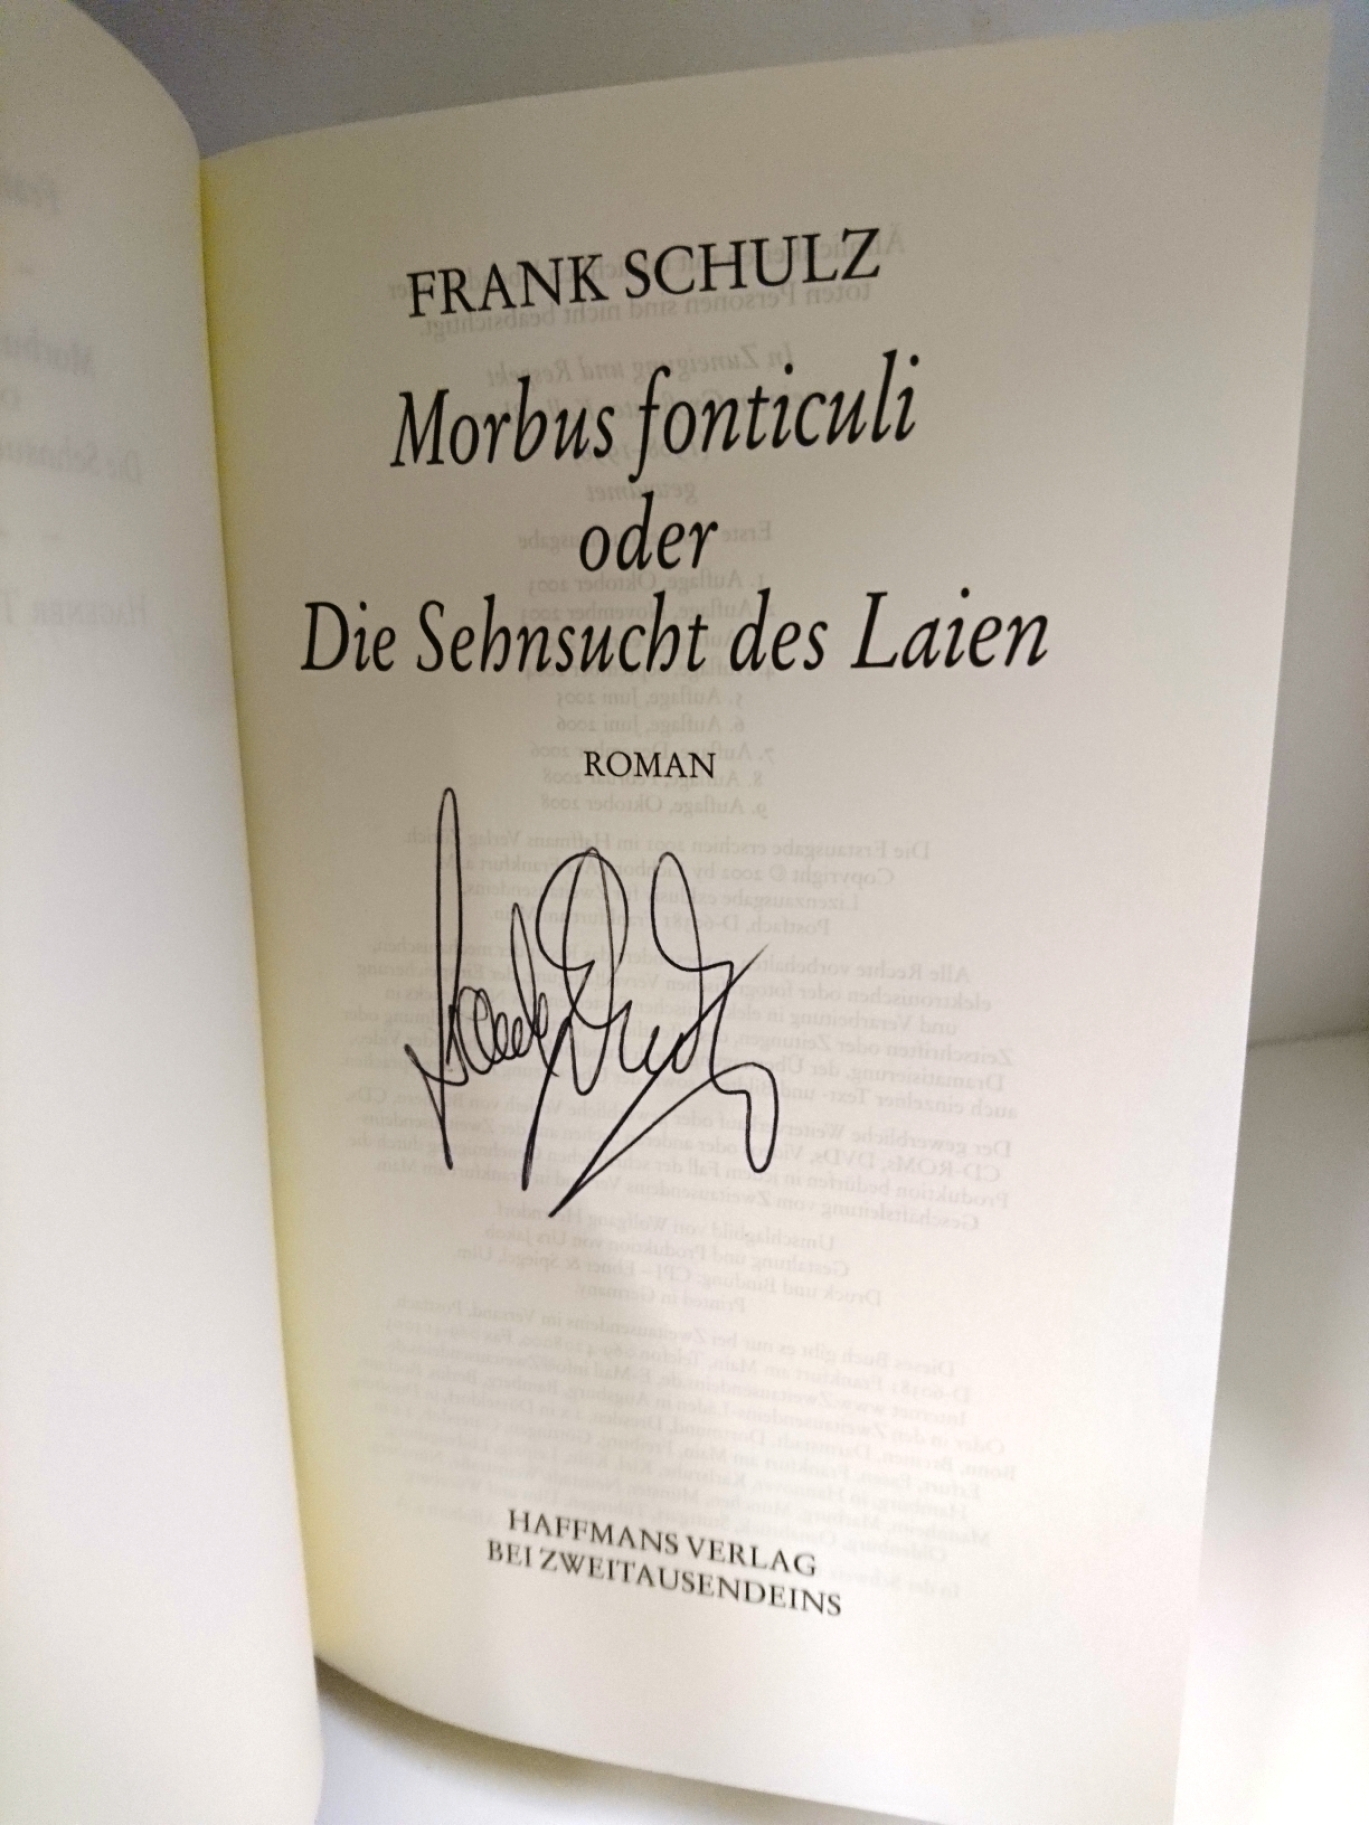 Schulz, Frank: Morbus fonticuli Oder Die Sehnsucht des Laien. Hagener Trilogie II